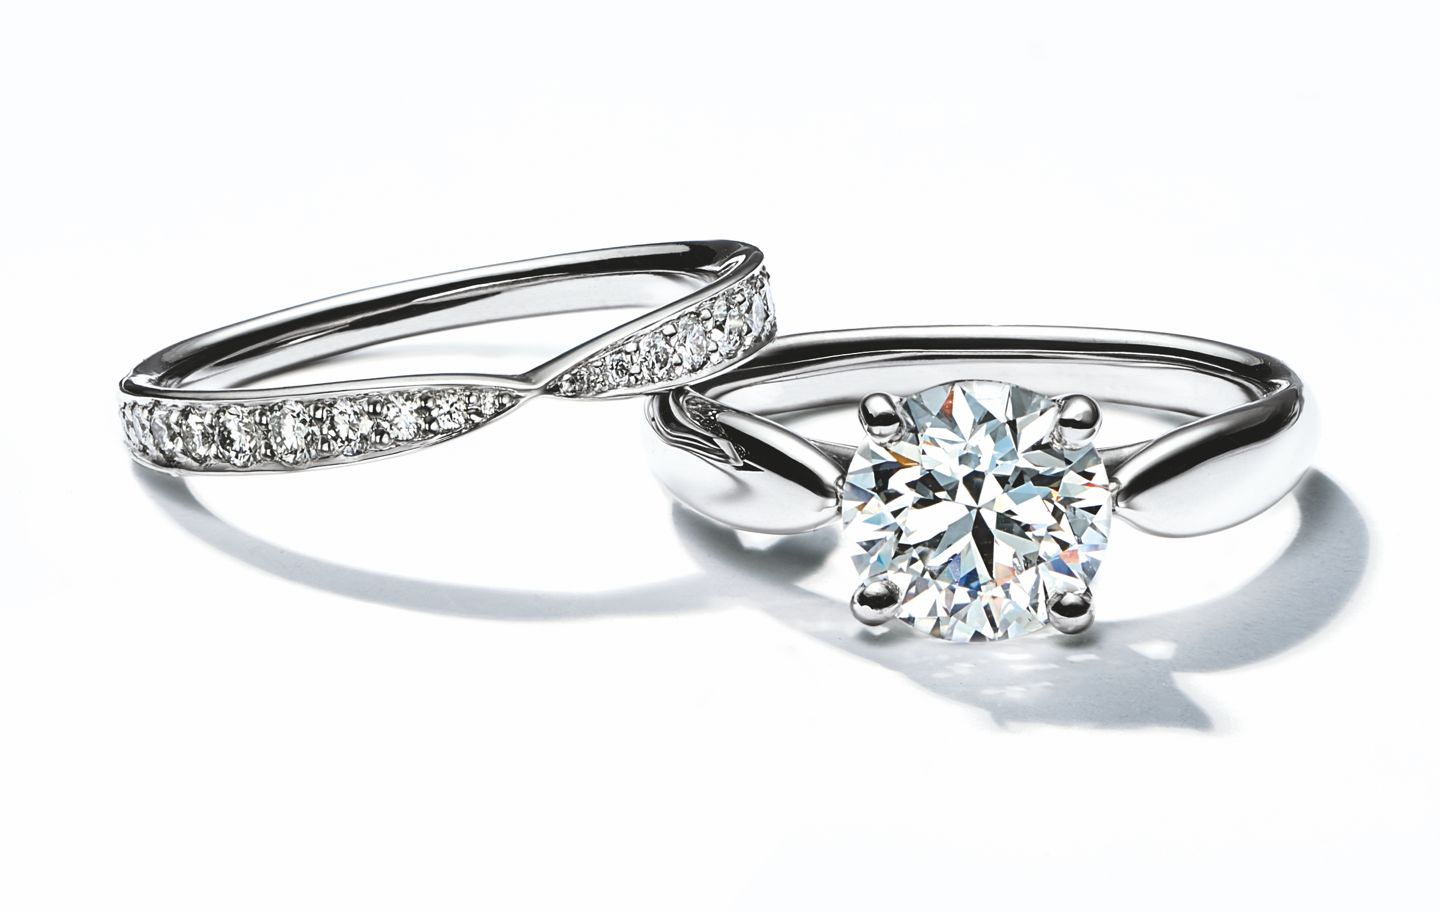 装飾ダイヤモンド02カラットティファニー セッティング 0.20ct. クラリティ・グレードIF  婚約指輪